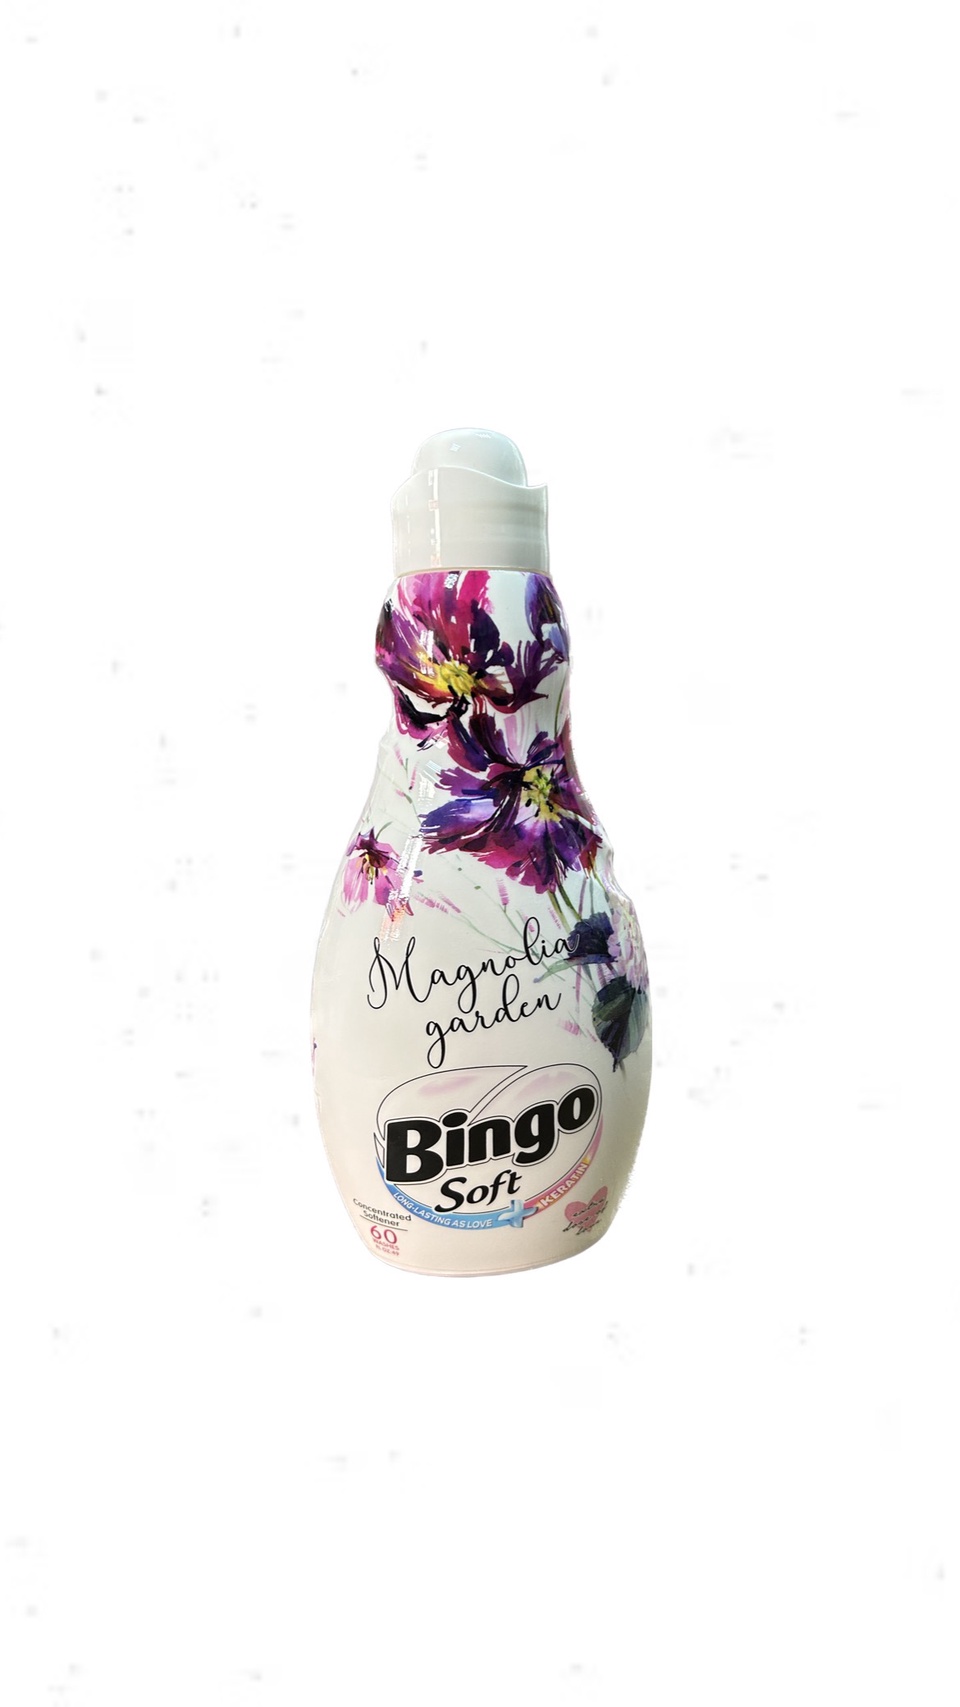 Кондиционер Bingo "MAGNOLIA GARDEN Soft", с ароматом магнолии, 1440 мл - 400 ₽, заказать онлайн.